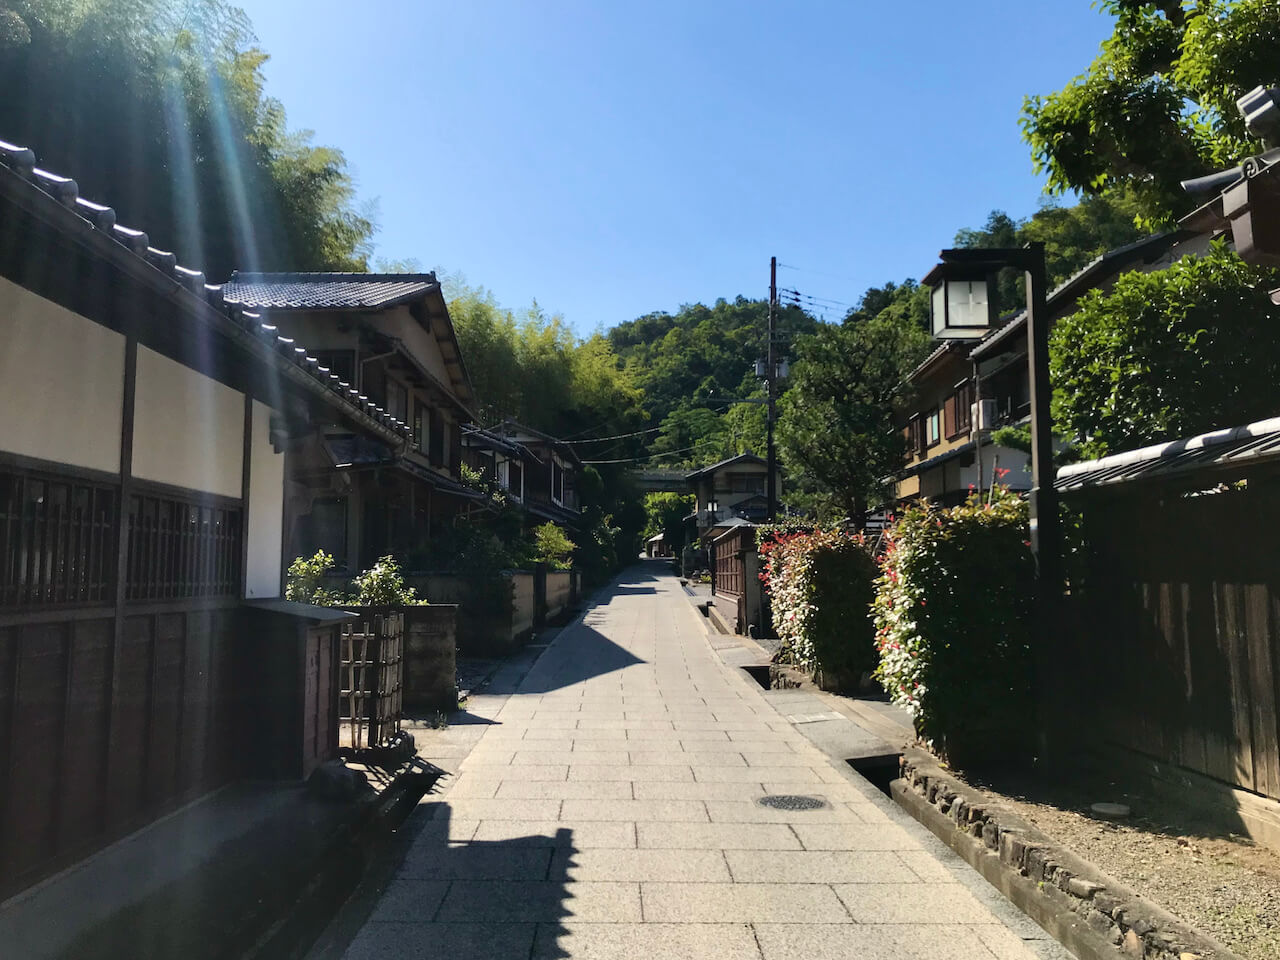 Scenery in Sagano, Kyoto